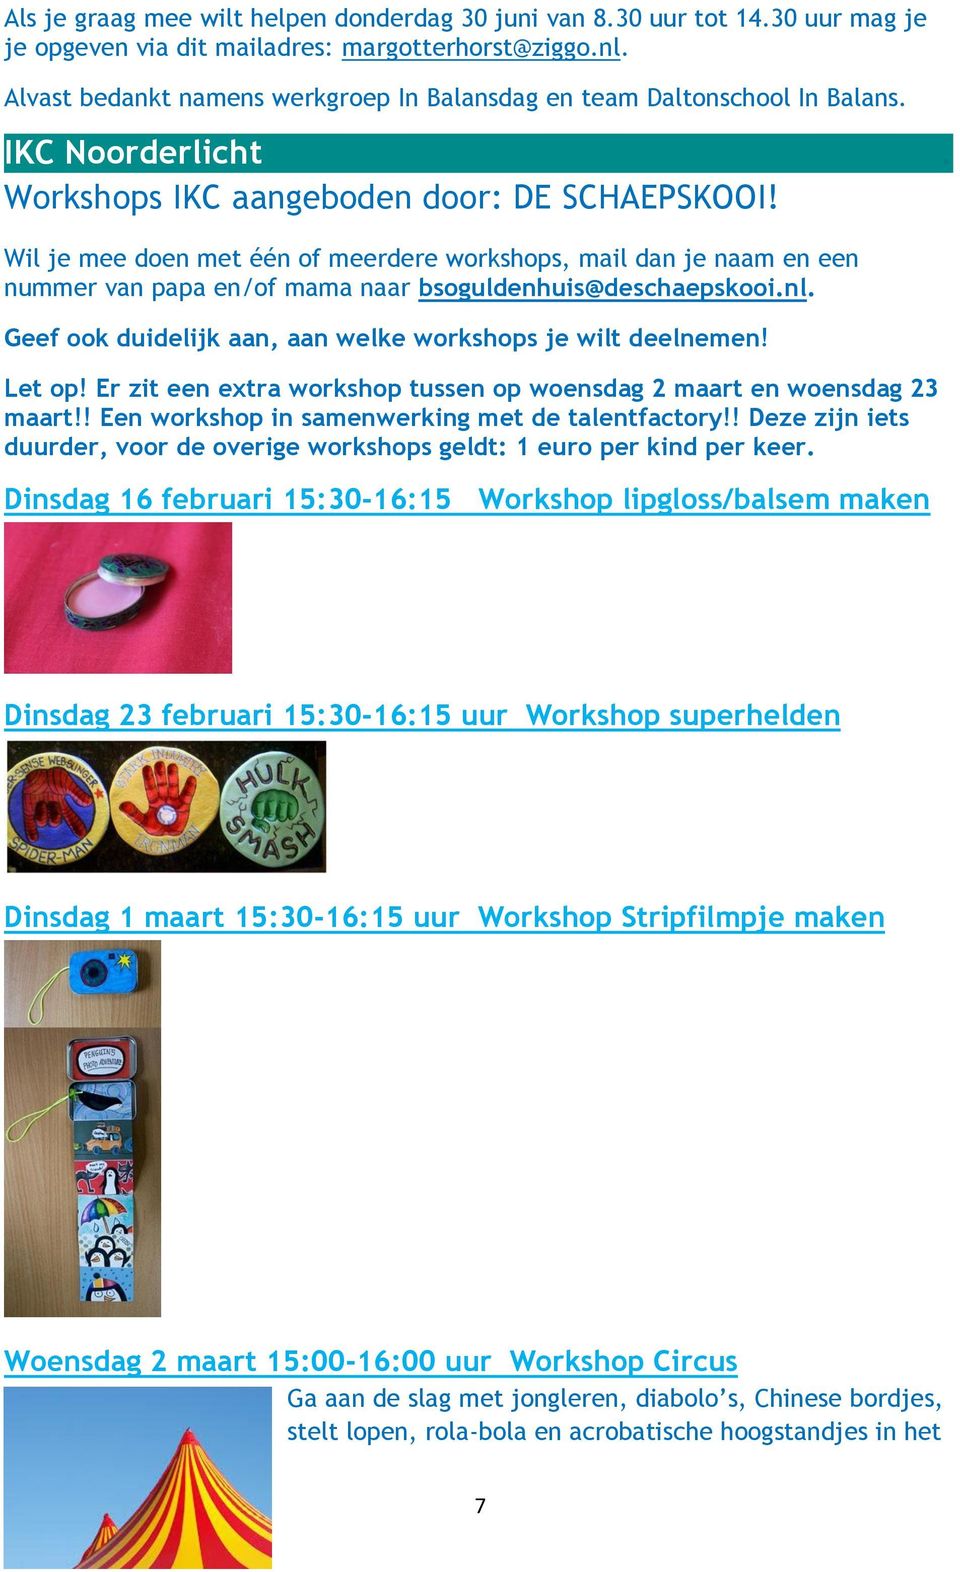 Wil je mee doen met één of meerdere workshops, mail dan je naam en een nummer van papa en/of mama naar bsoguldenhuis@deschaepskooi.nl. Geef ook duidelijk aan, aan welke workshops je wilt deelnemen!